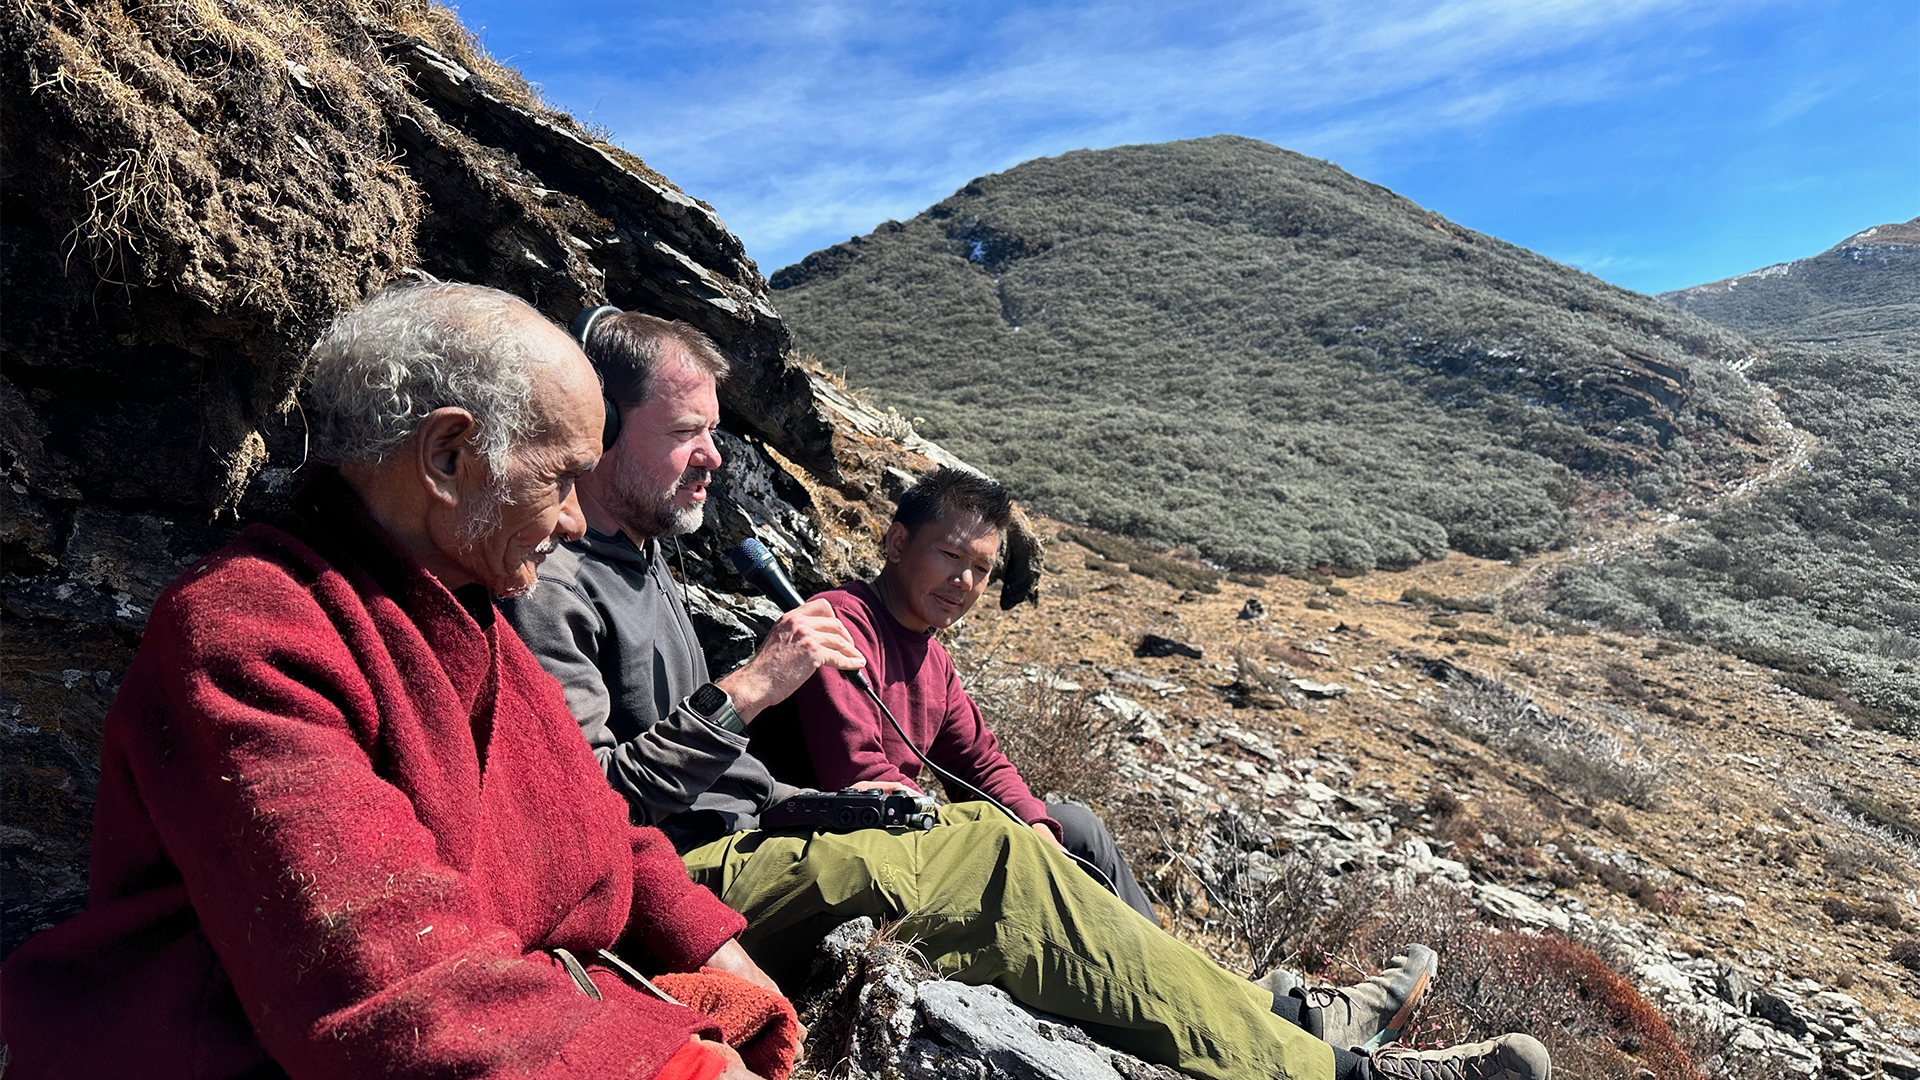 Richard Horsey (centro) grabando en el Santuario de Vida Silvestre Sakteng junto al guía nómada Brokpa Sumba (izquierda) y la guía Pema Sonam (derecha).